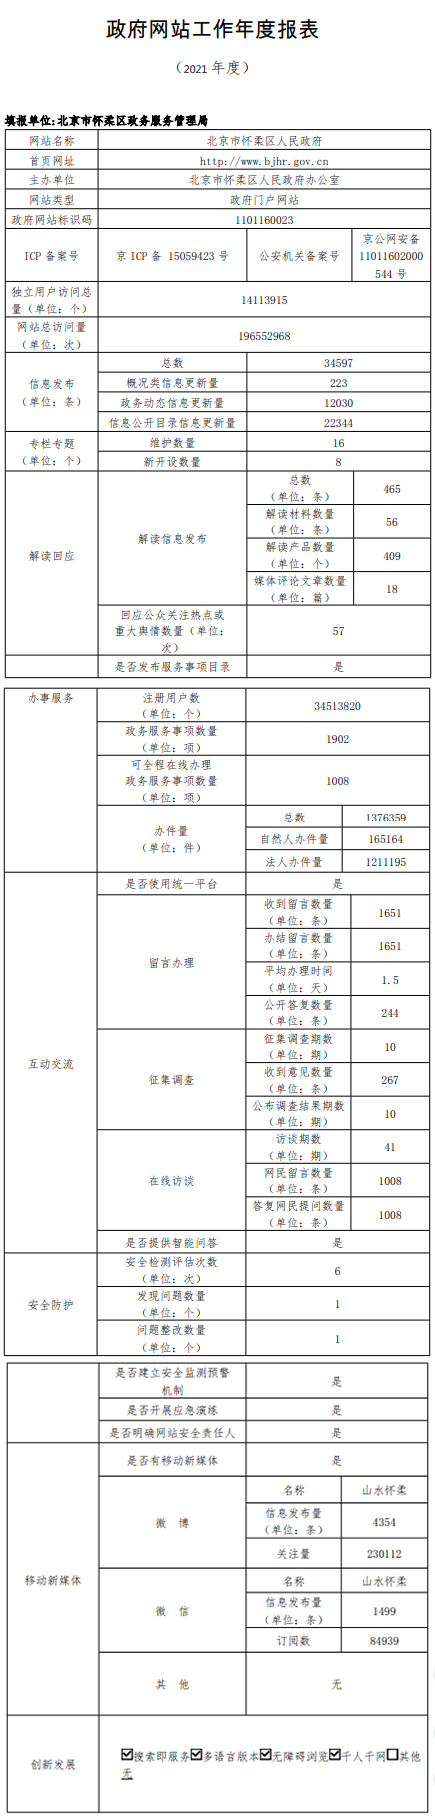 北京市懷柔區人民政府2021年政府網站年度工作報表